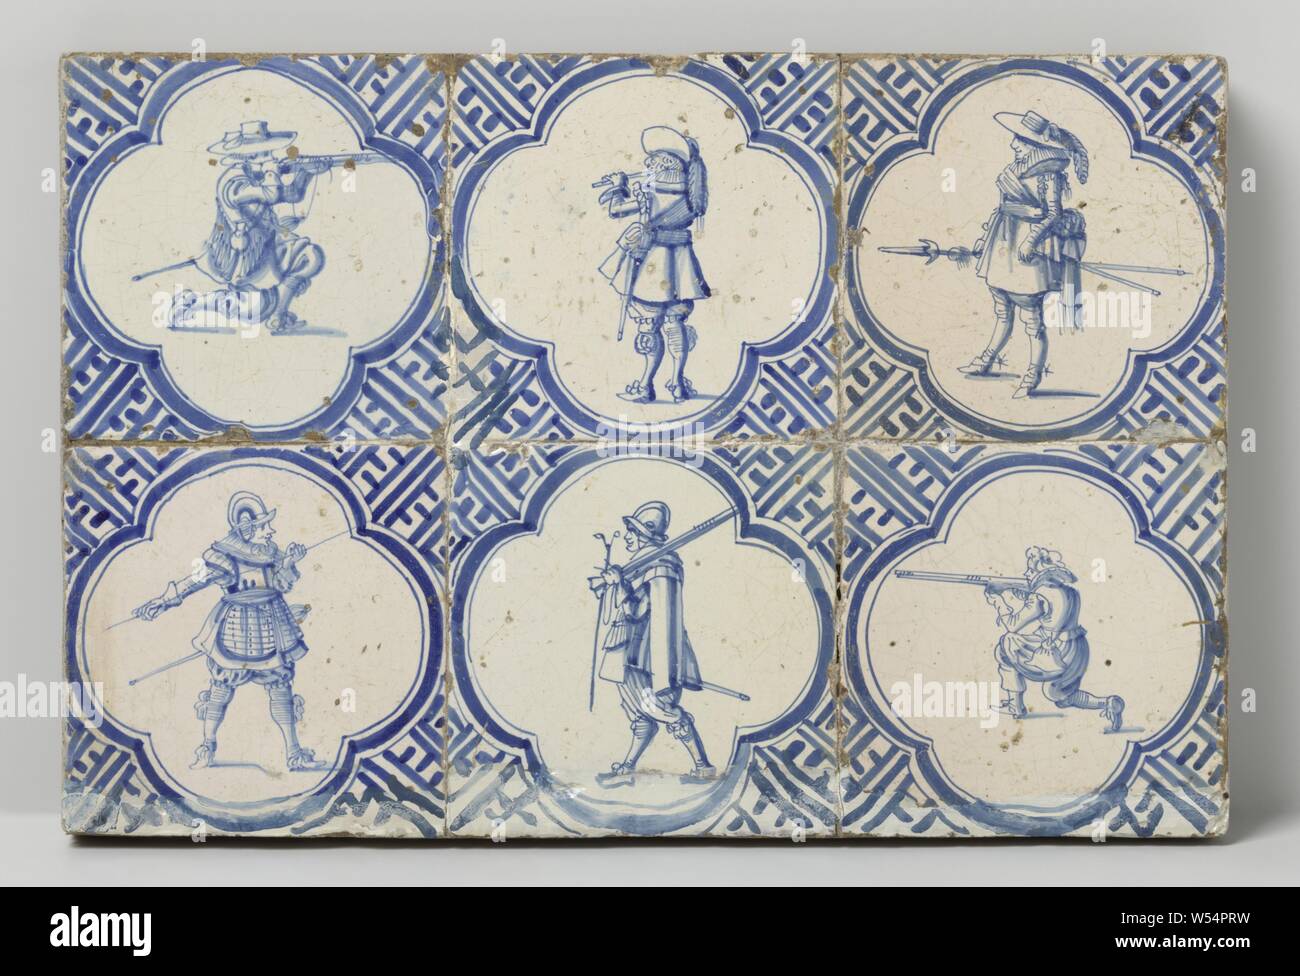 Feld von sechs Fliesen mit Soldaten, Feld von sechs Kacheln (3x3) mit jeweils einer blau lackiert Soldat innerhalb von vier. In den Ecken, Mäander Ornament., anonym, Niederlande, C. 1620 - C. 1640, Steingut, Zinn Glasur, H 27 cm x W 40 cm x d 3 cm Stockfoto